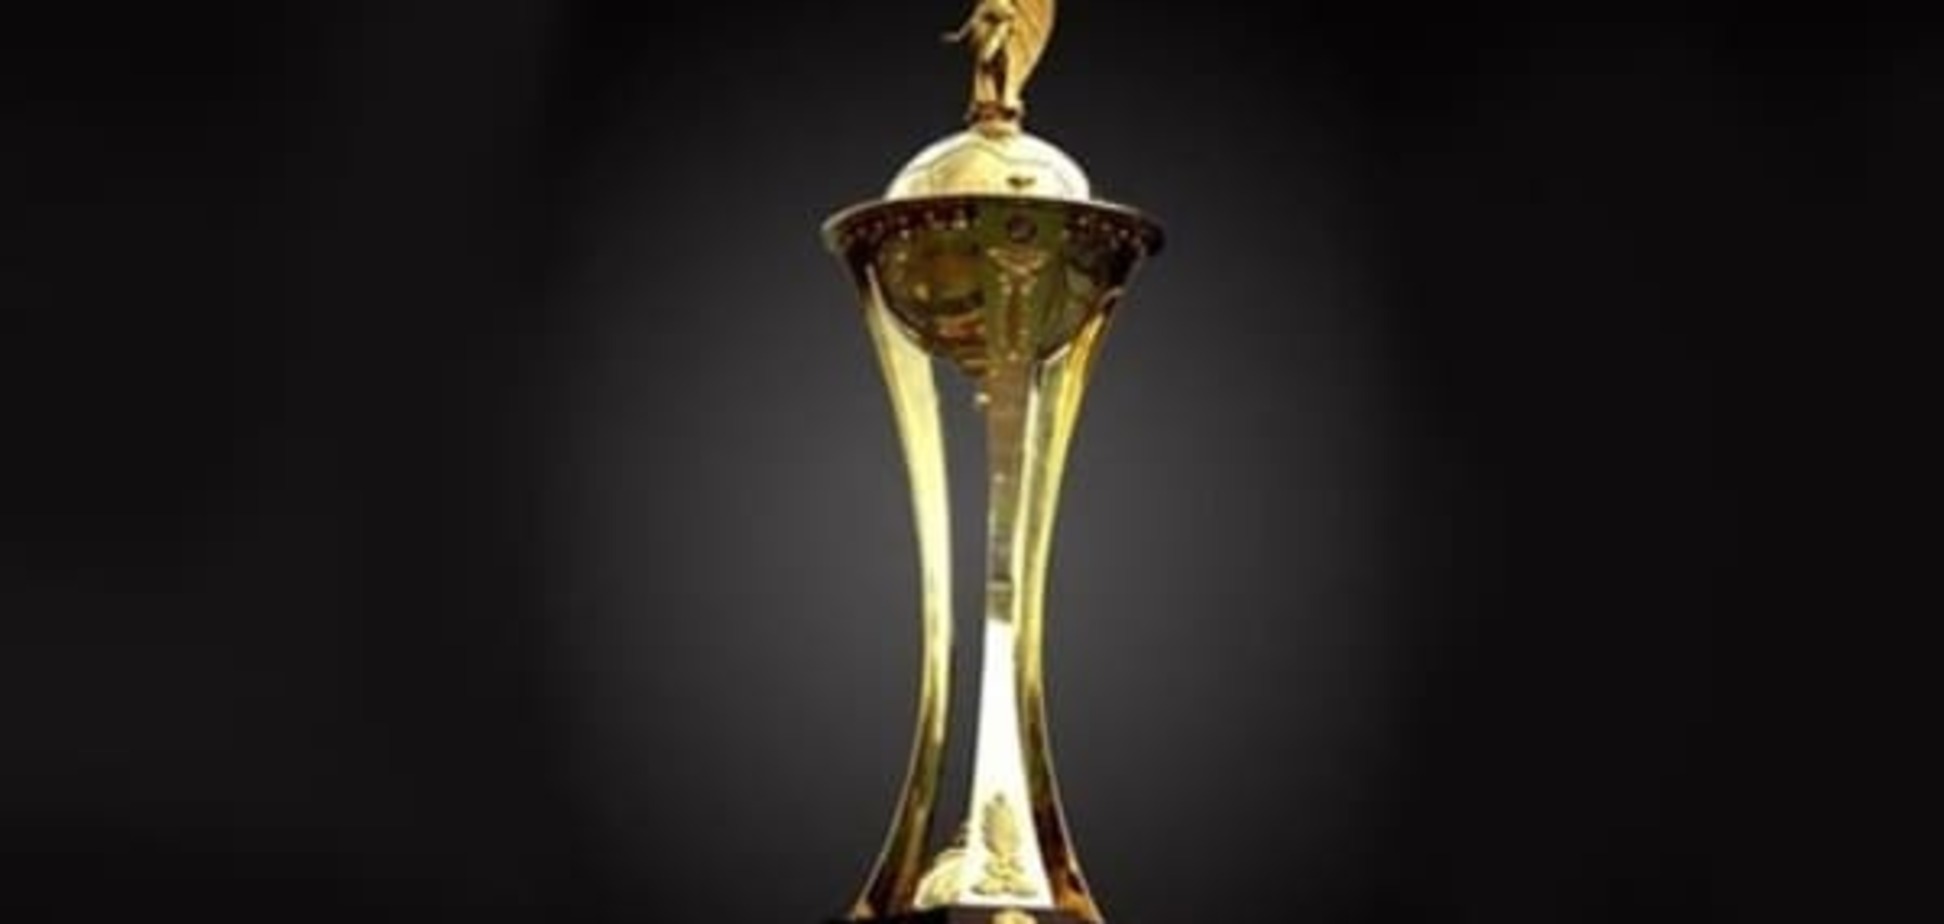 Определились все участники 1/4 финала Кубка Украины по футболу